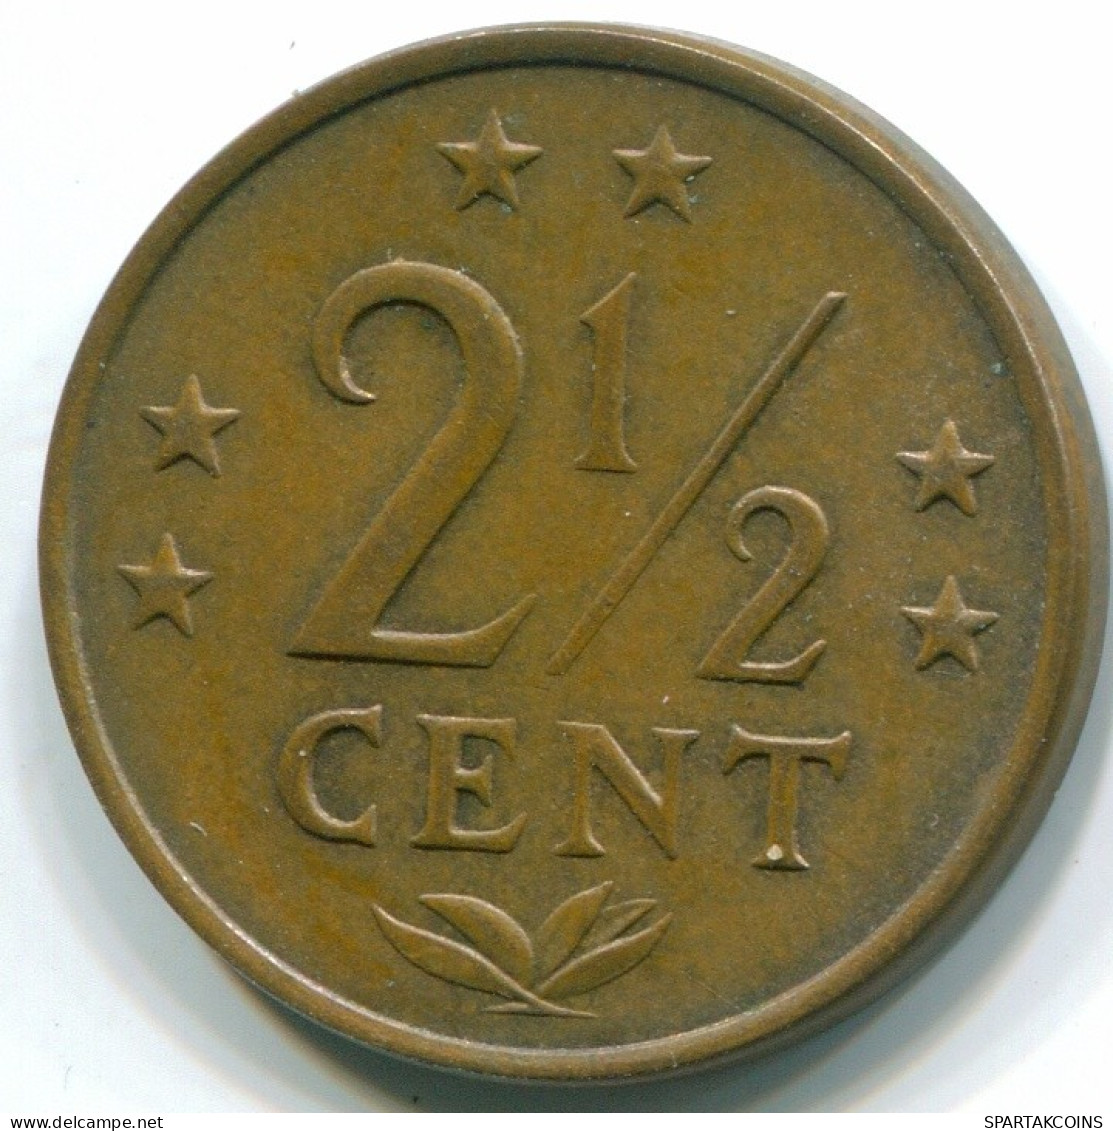 2 1/2 CENT 1971 NIEDERLÄNDISCHE ANTILLEN Bronze Koloniale Münze #S10488.D.A - Nederlandse Antillen